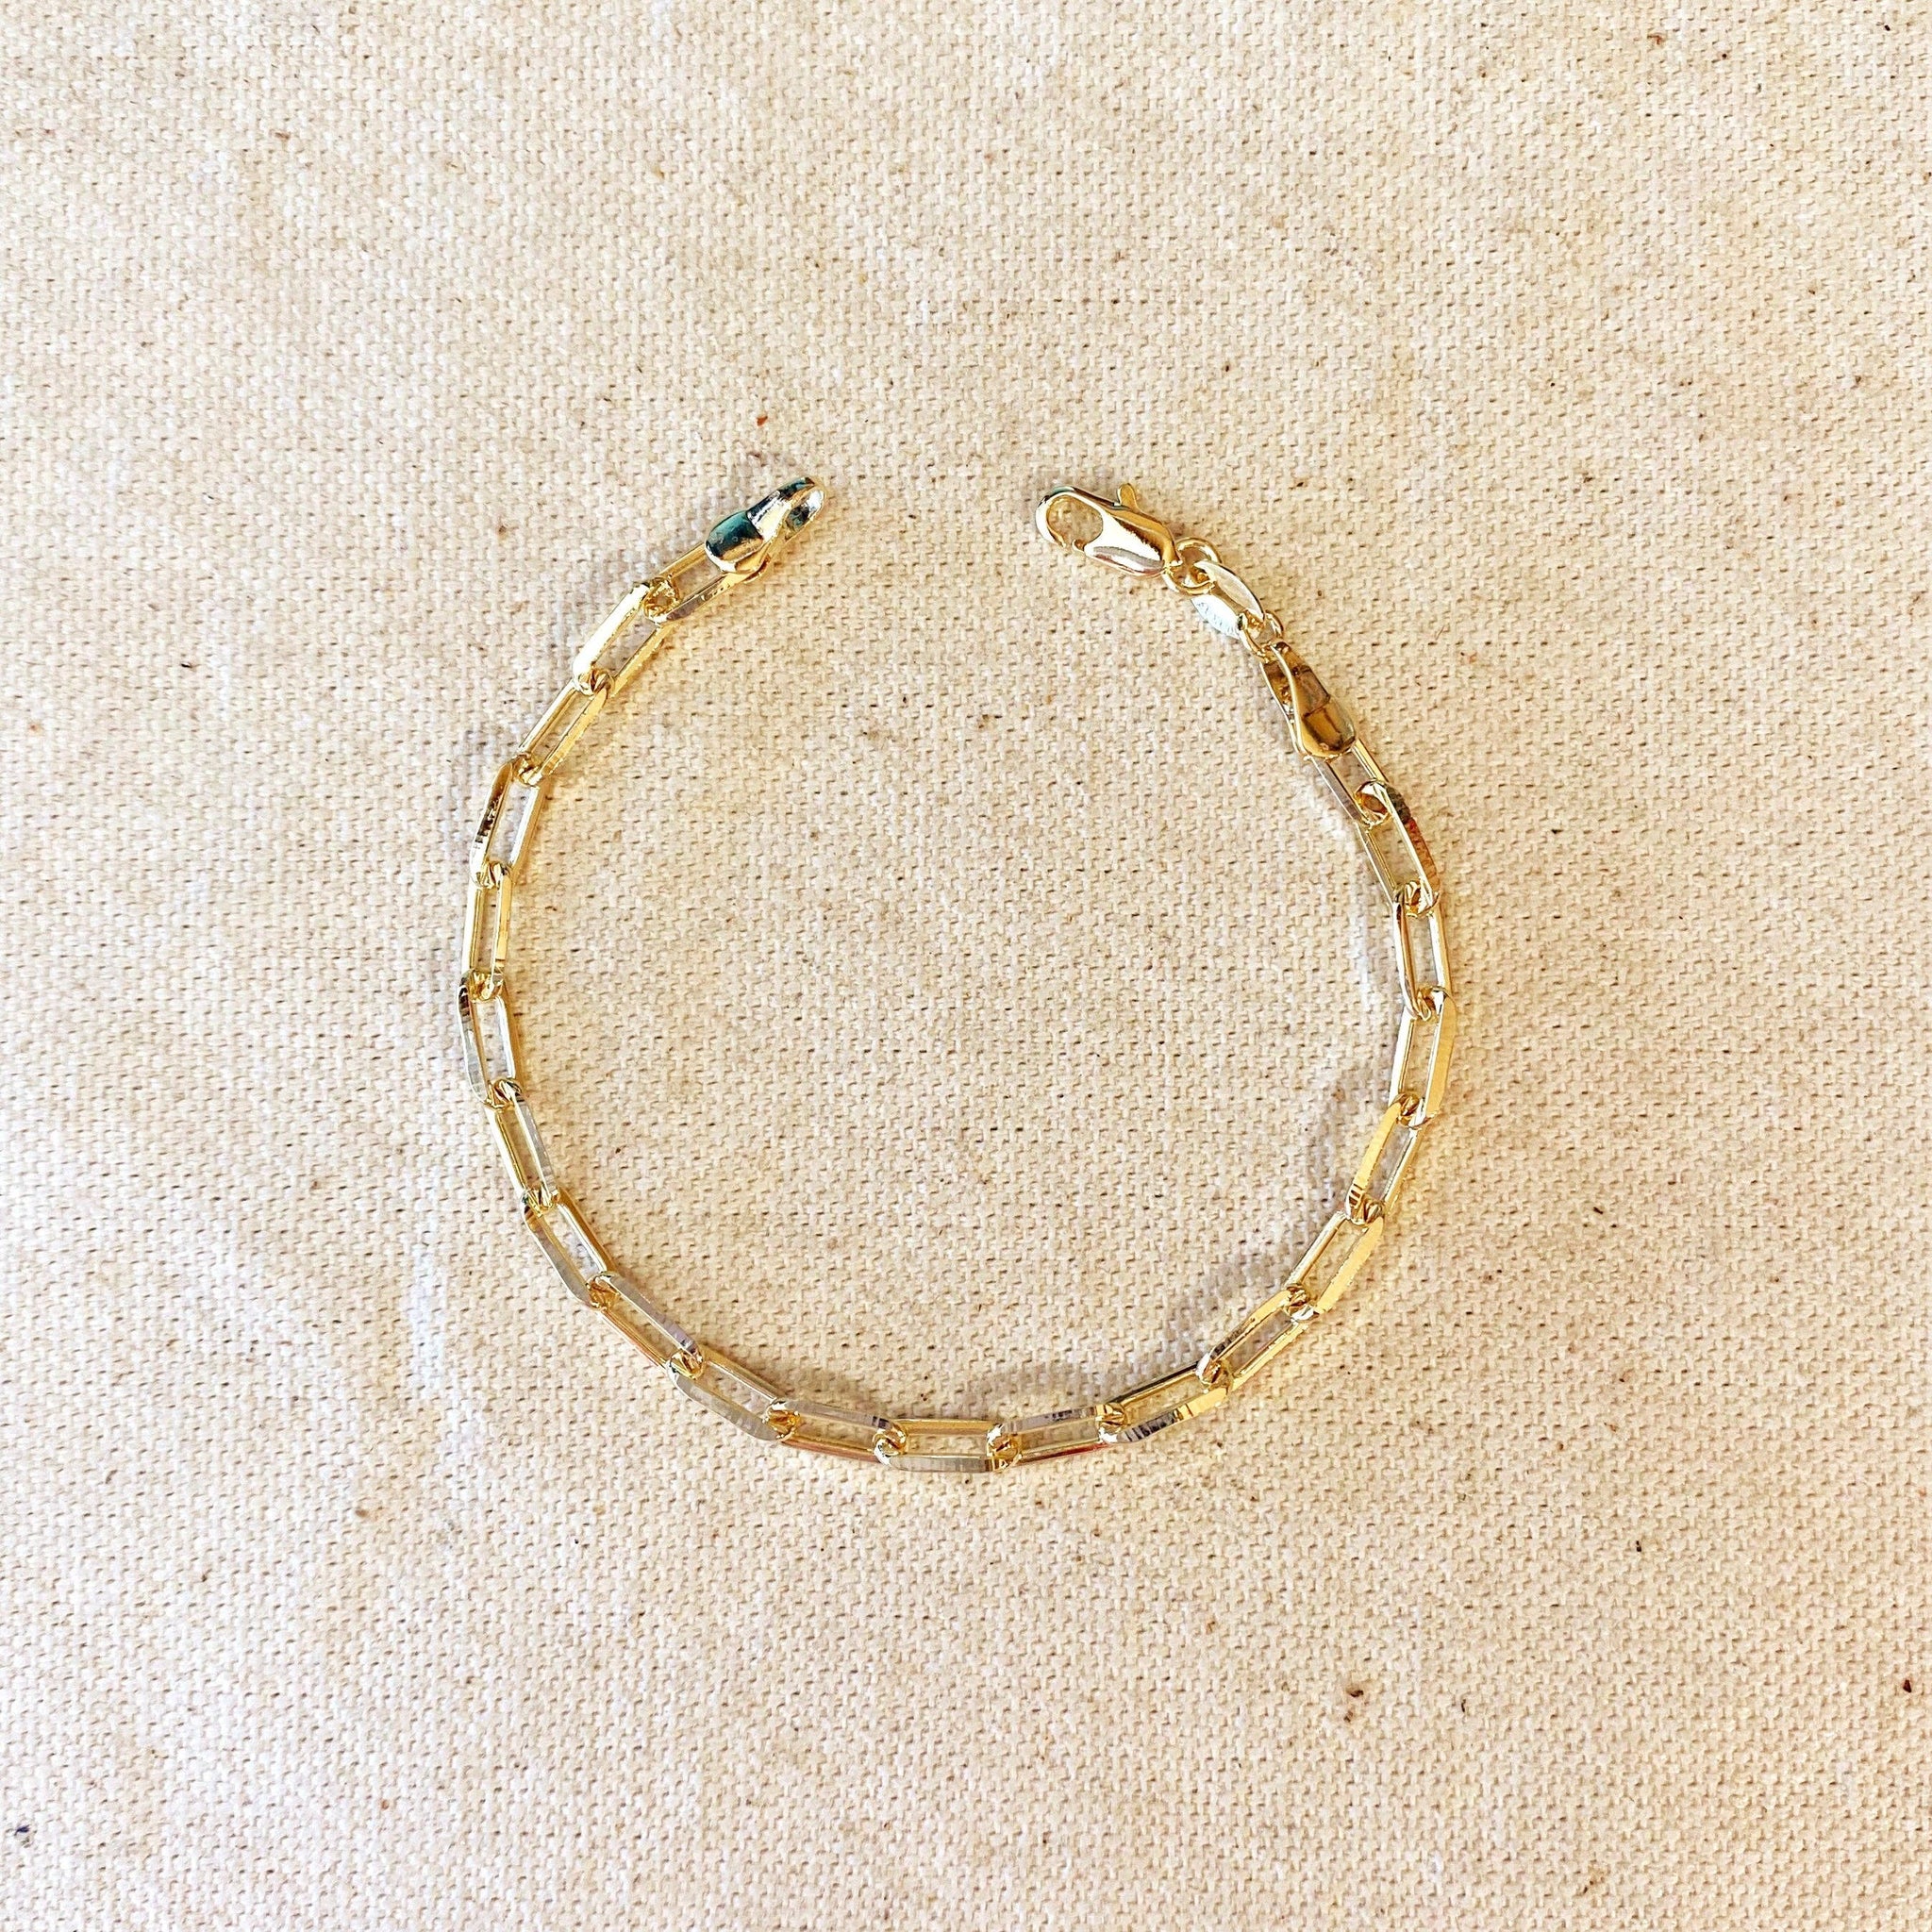 GoldFi - 18k Gold Filled Paperclip Link Bracelet